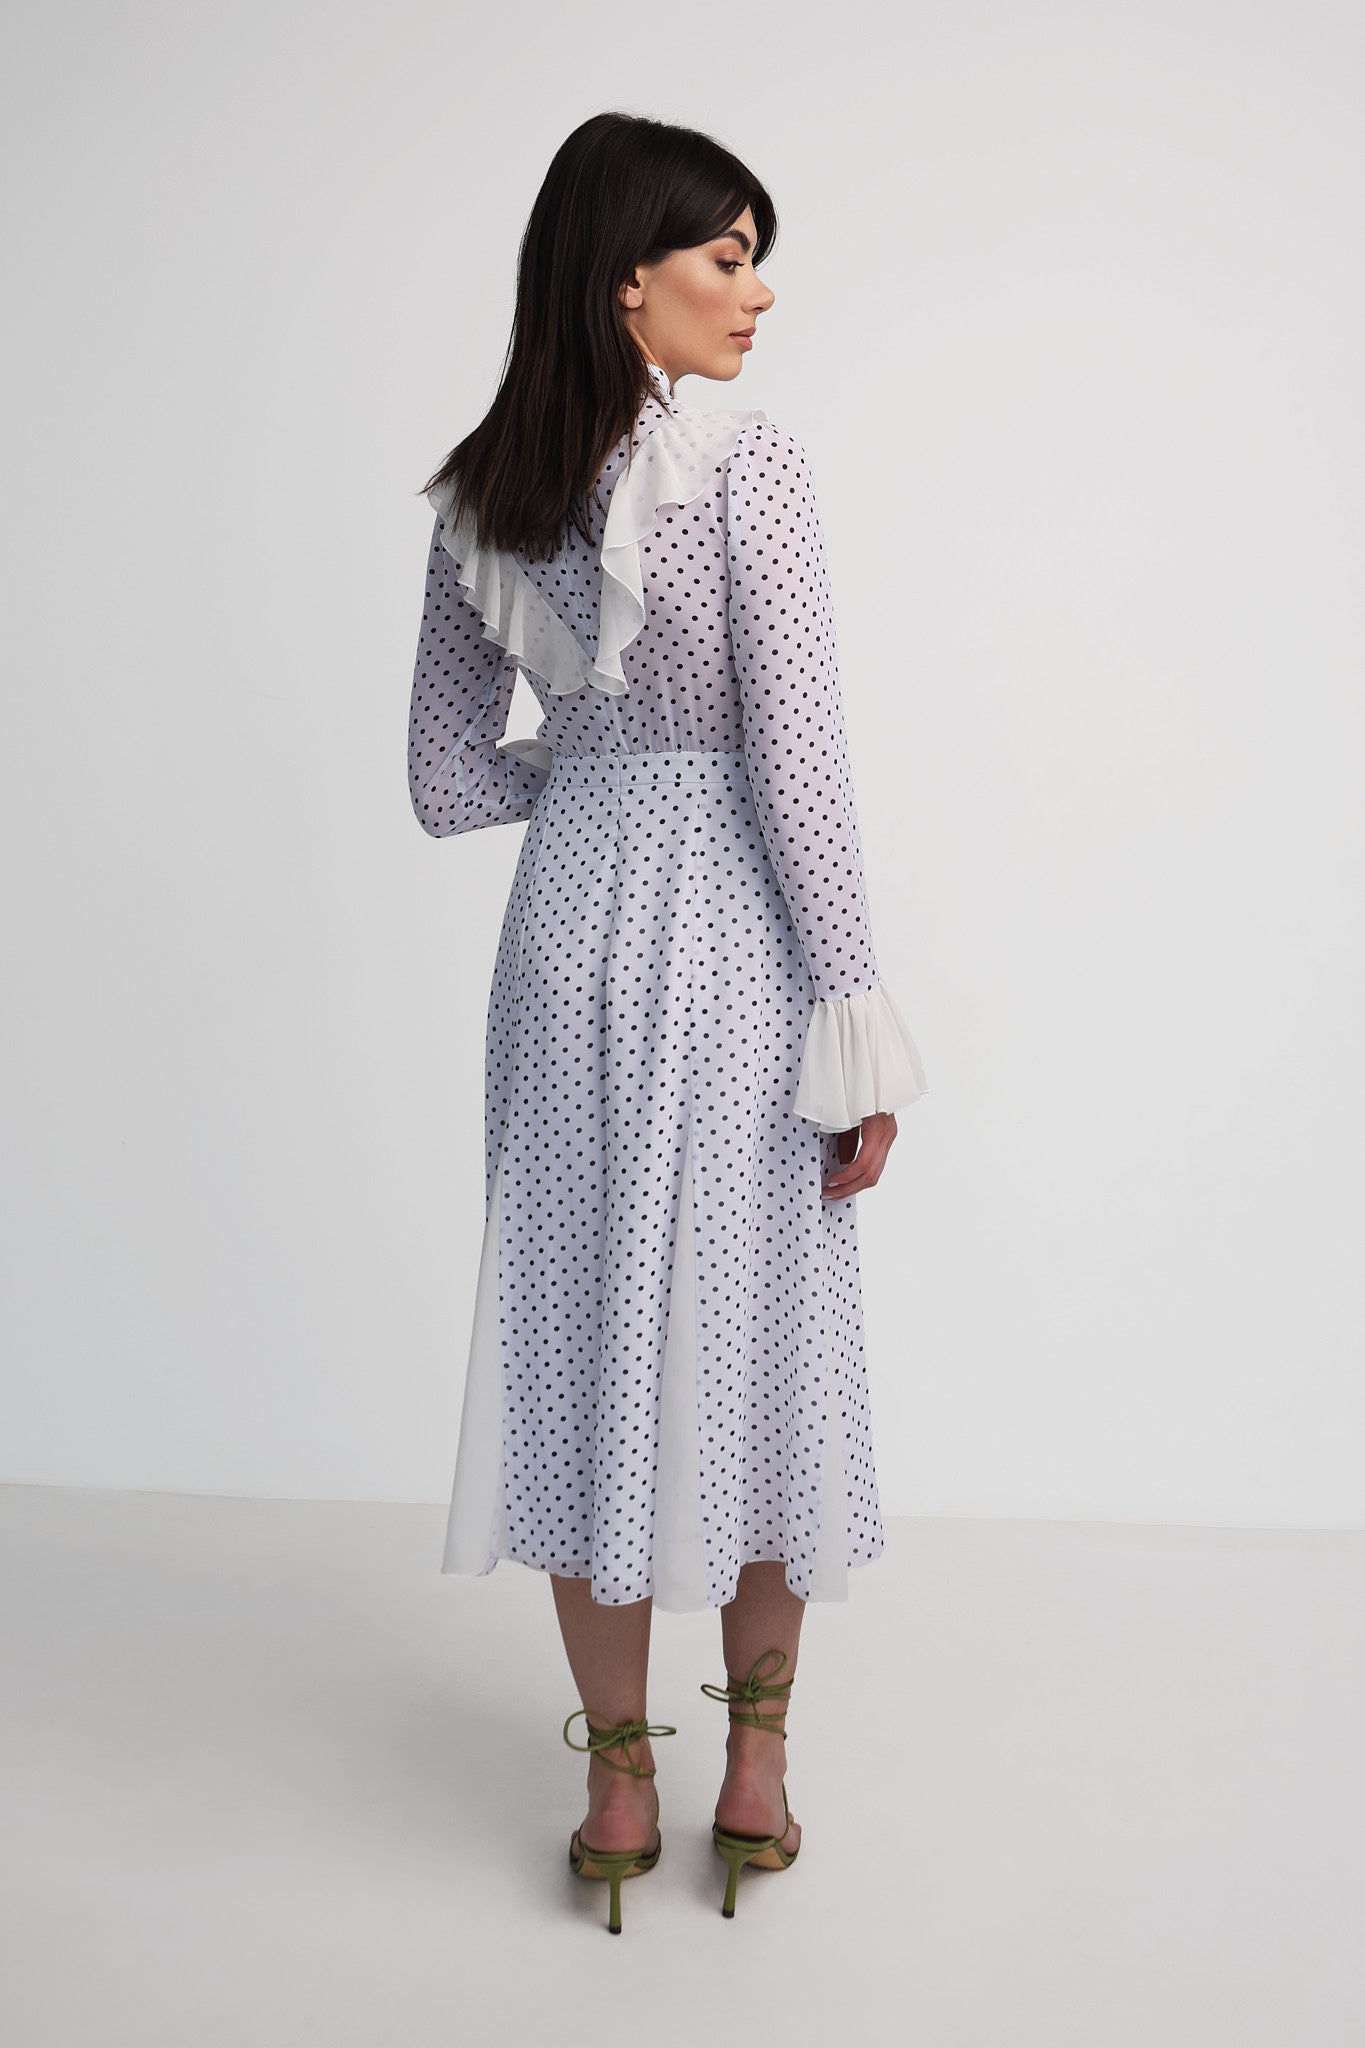 Chiffon polka-dot dress with ruffles in white